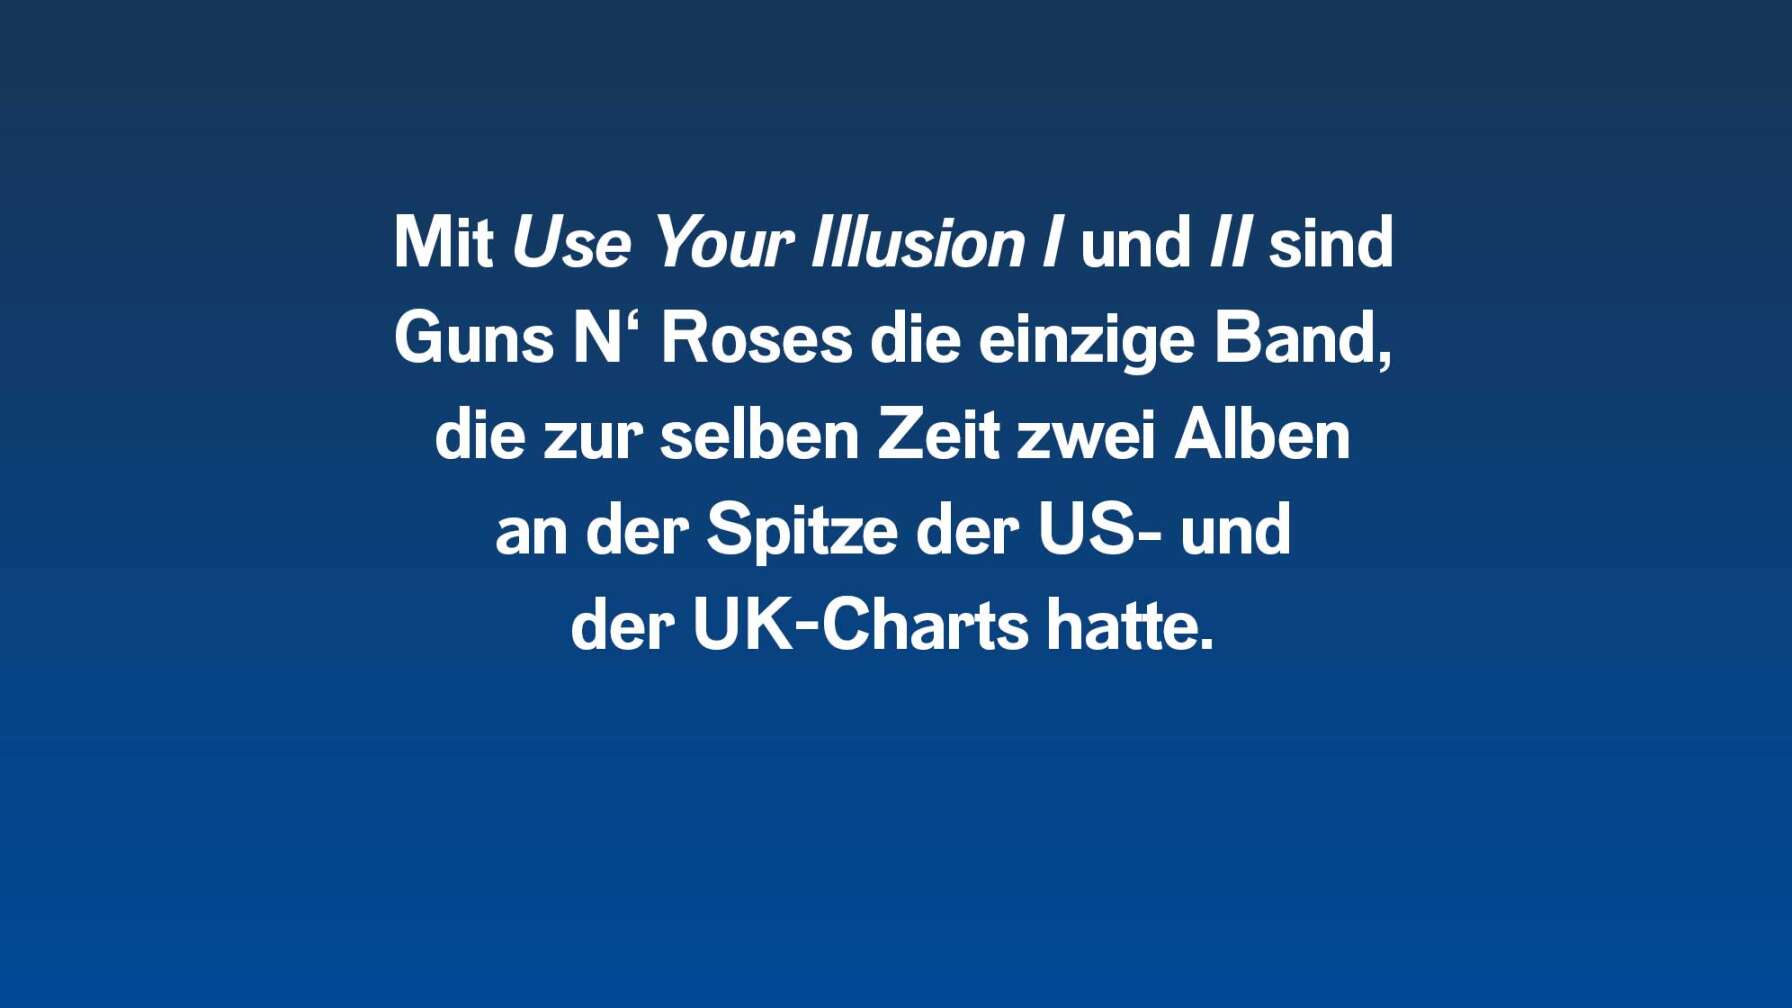 Mit "Use Your Illusion 1 und 2" sind Guns N' Roses die einzige Band, die zur selben Zeit zwei Alben an der Spitze der US- und der UK-Charts hatte.